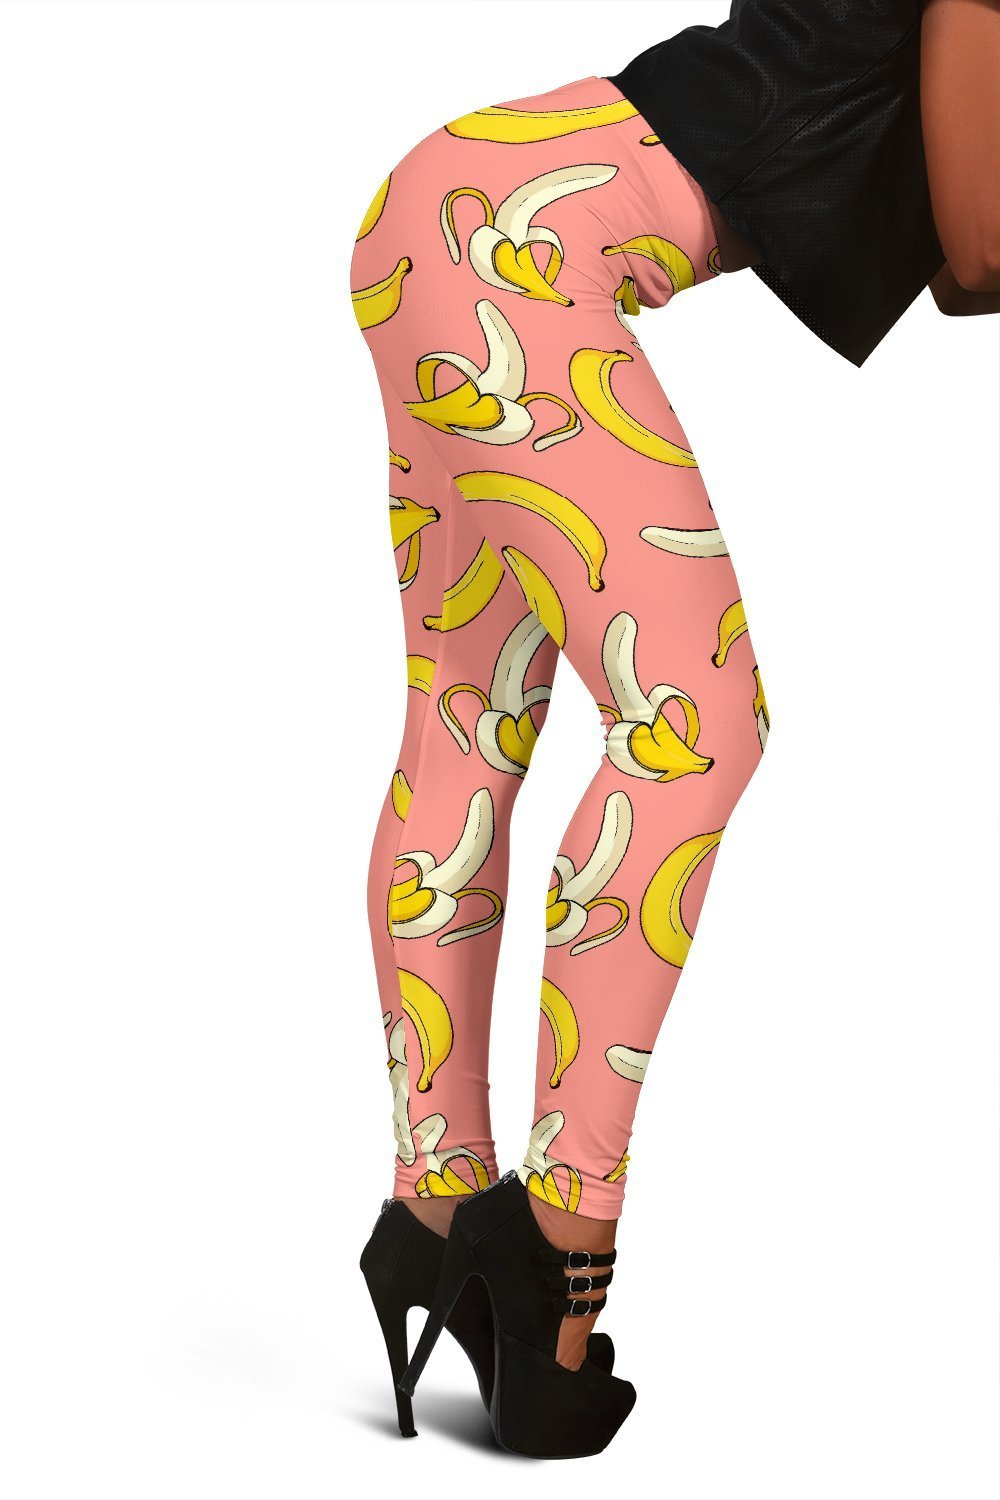 Pink Banana Pattern Print Women Leggings-grizzshop